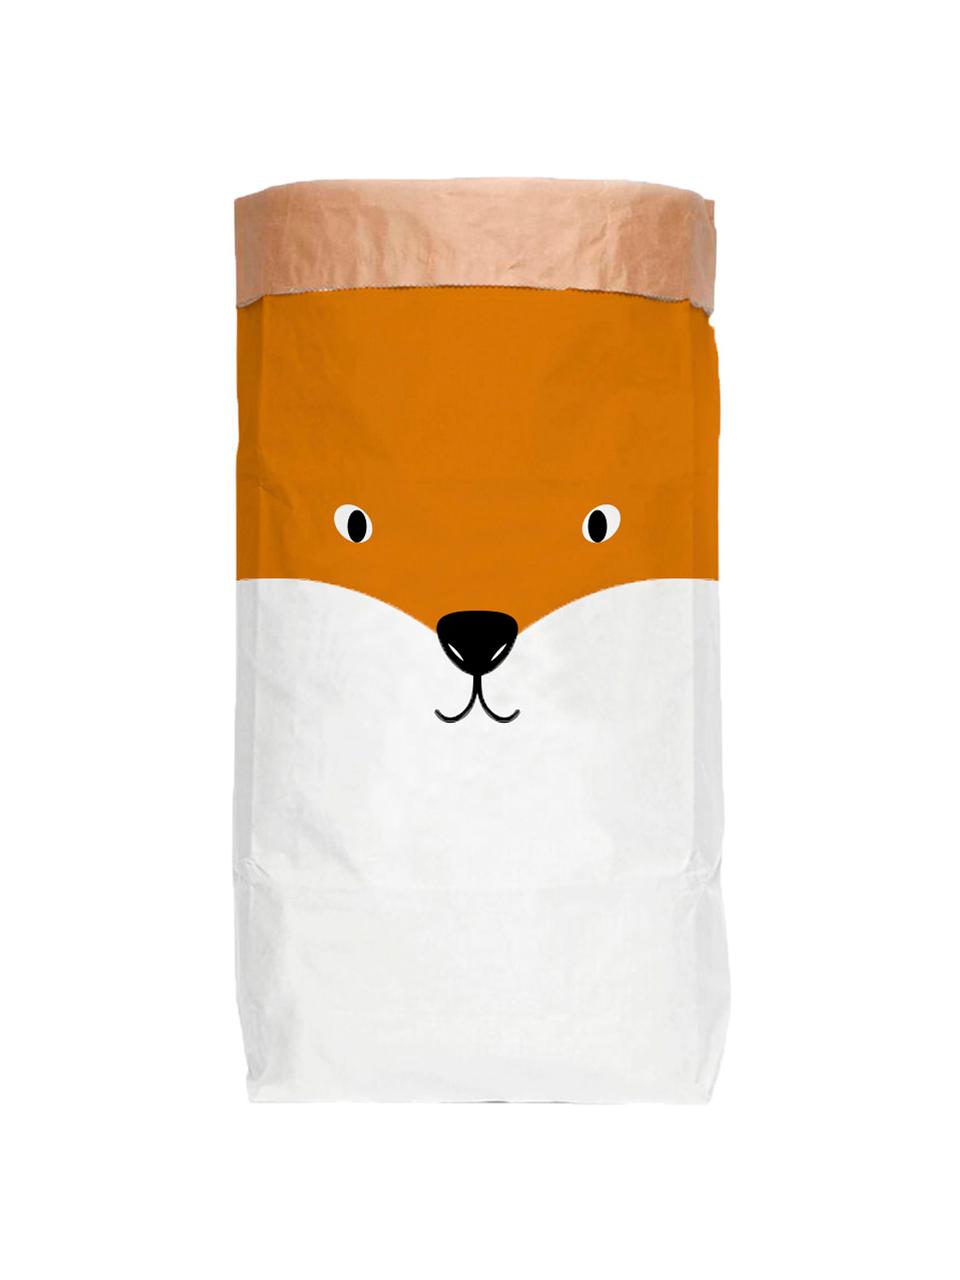 Aufbewahrungstüte Fox, Recyceltes Papier, Weiss, Orange, B 60 x H 90 cm